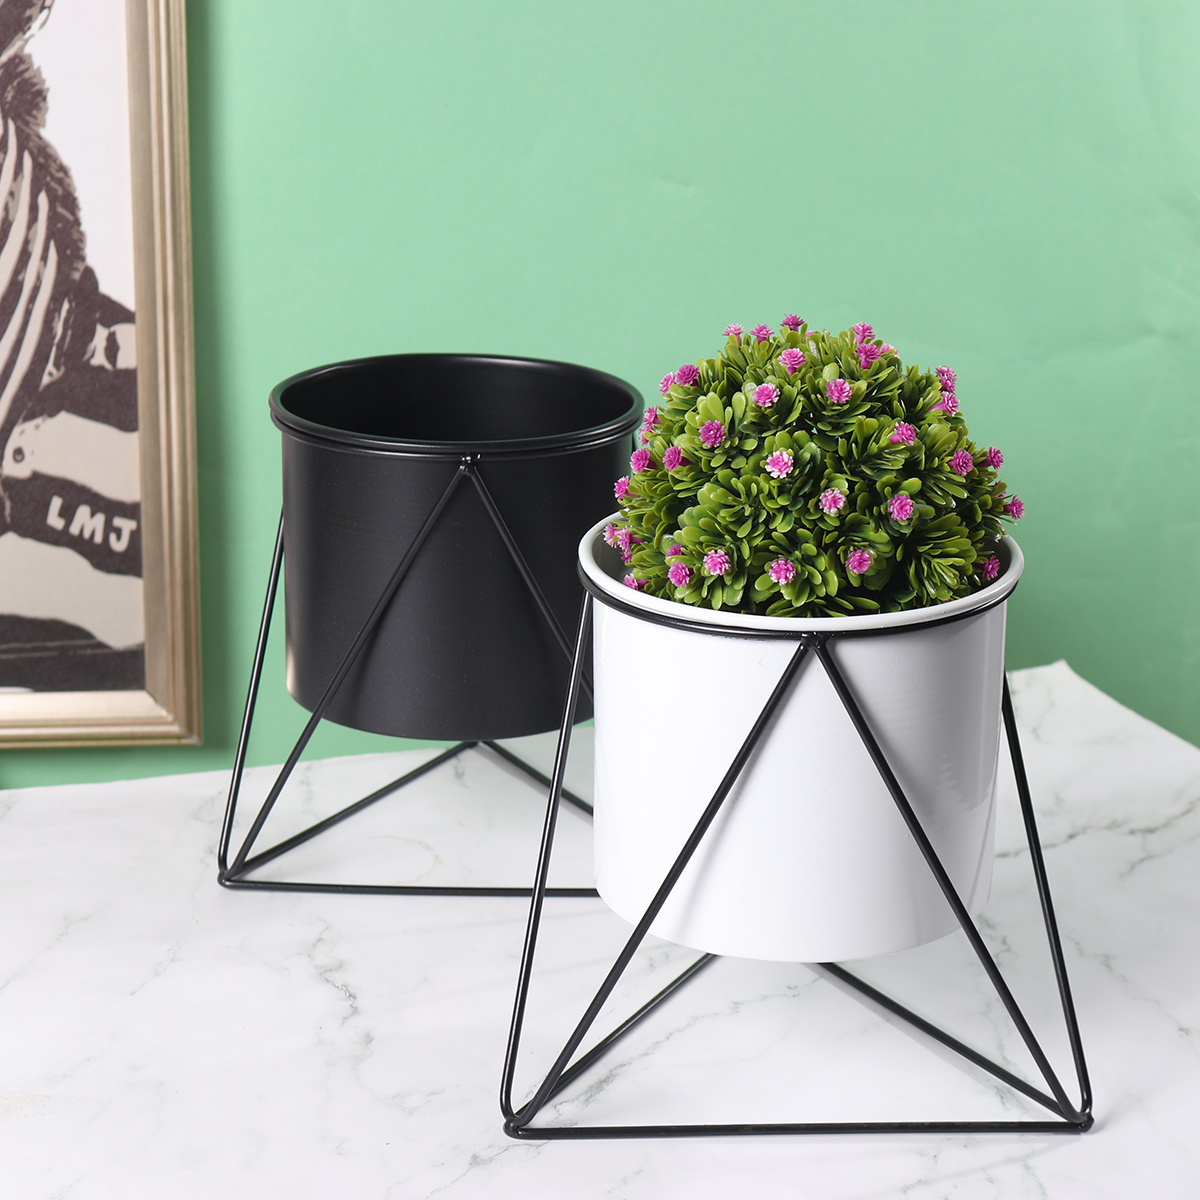 Metal-Flower-Pot-Stand-Indoor-Outdoor-Garden-Balcony-Desktop-Plant-Rack-Iron-Flower-Pot-Shelf-Home-O-1787537-4